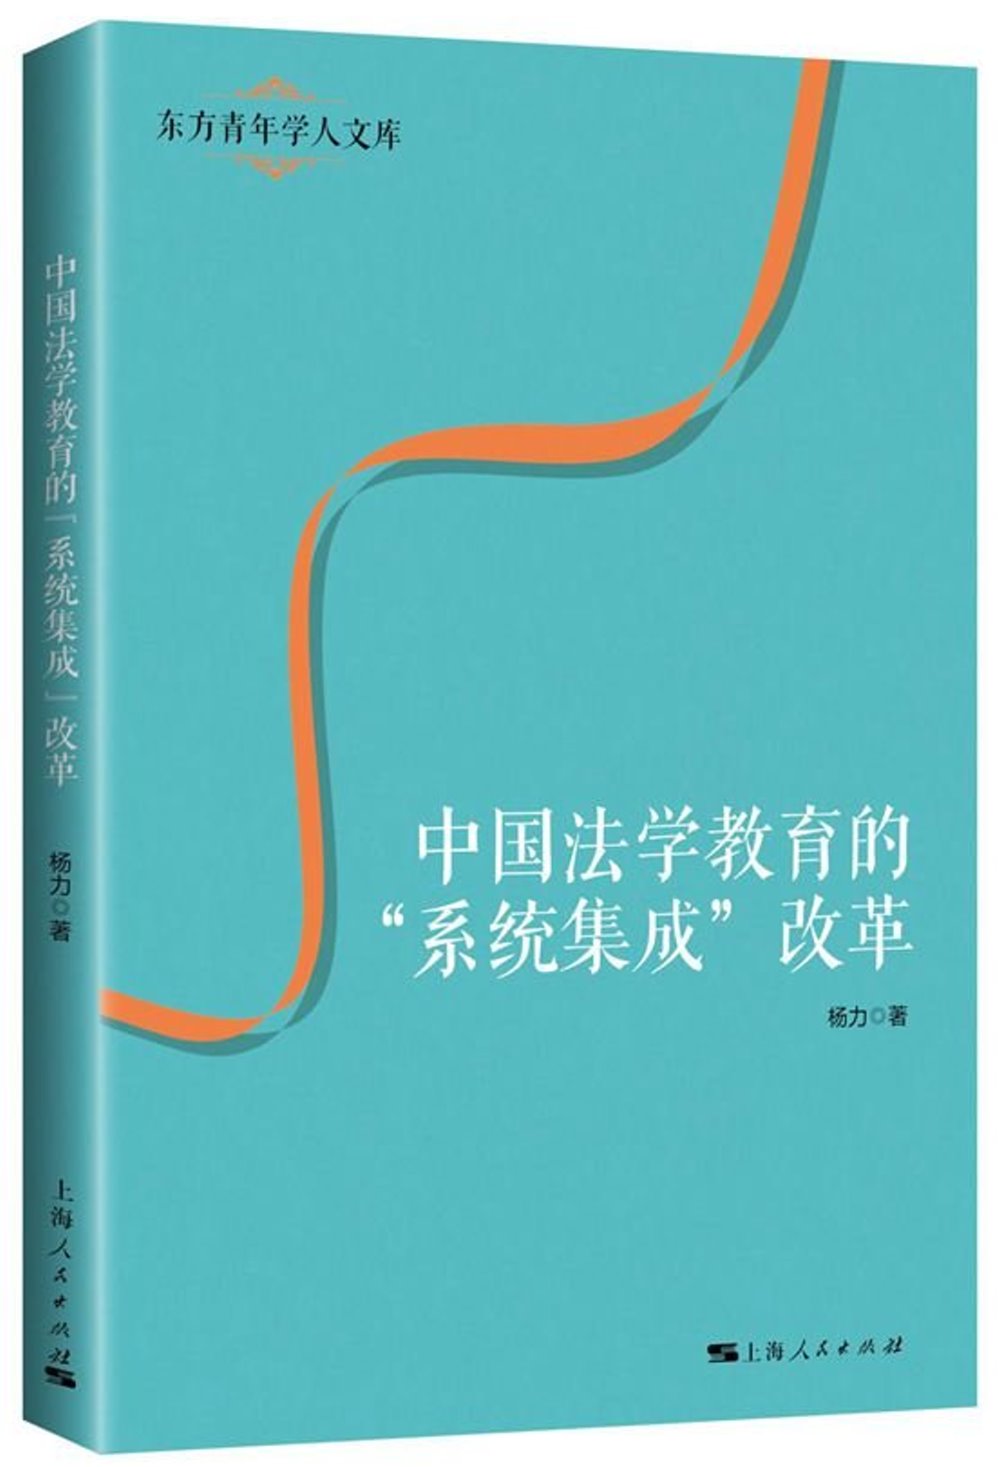 中國法學教育的「系統集成」改革